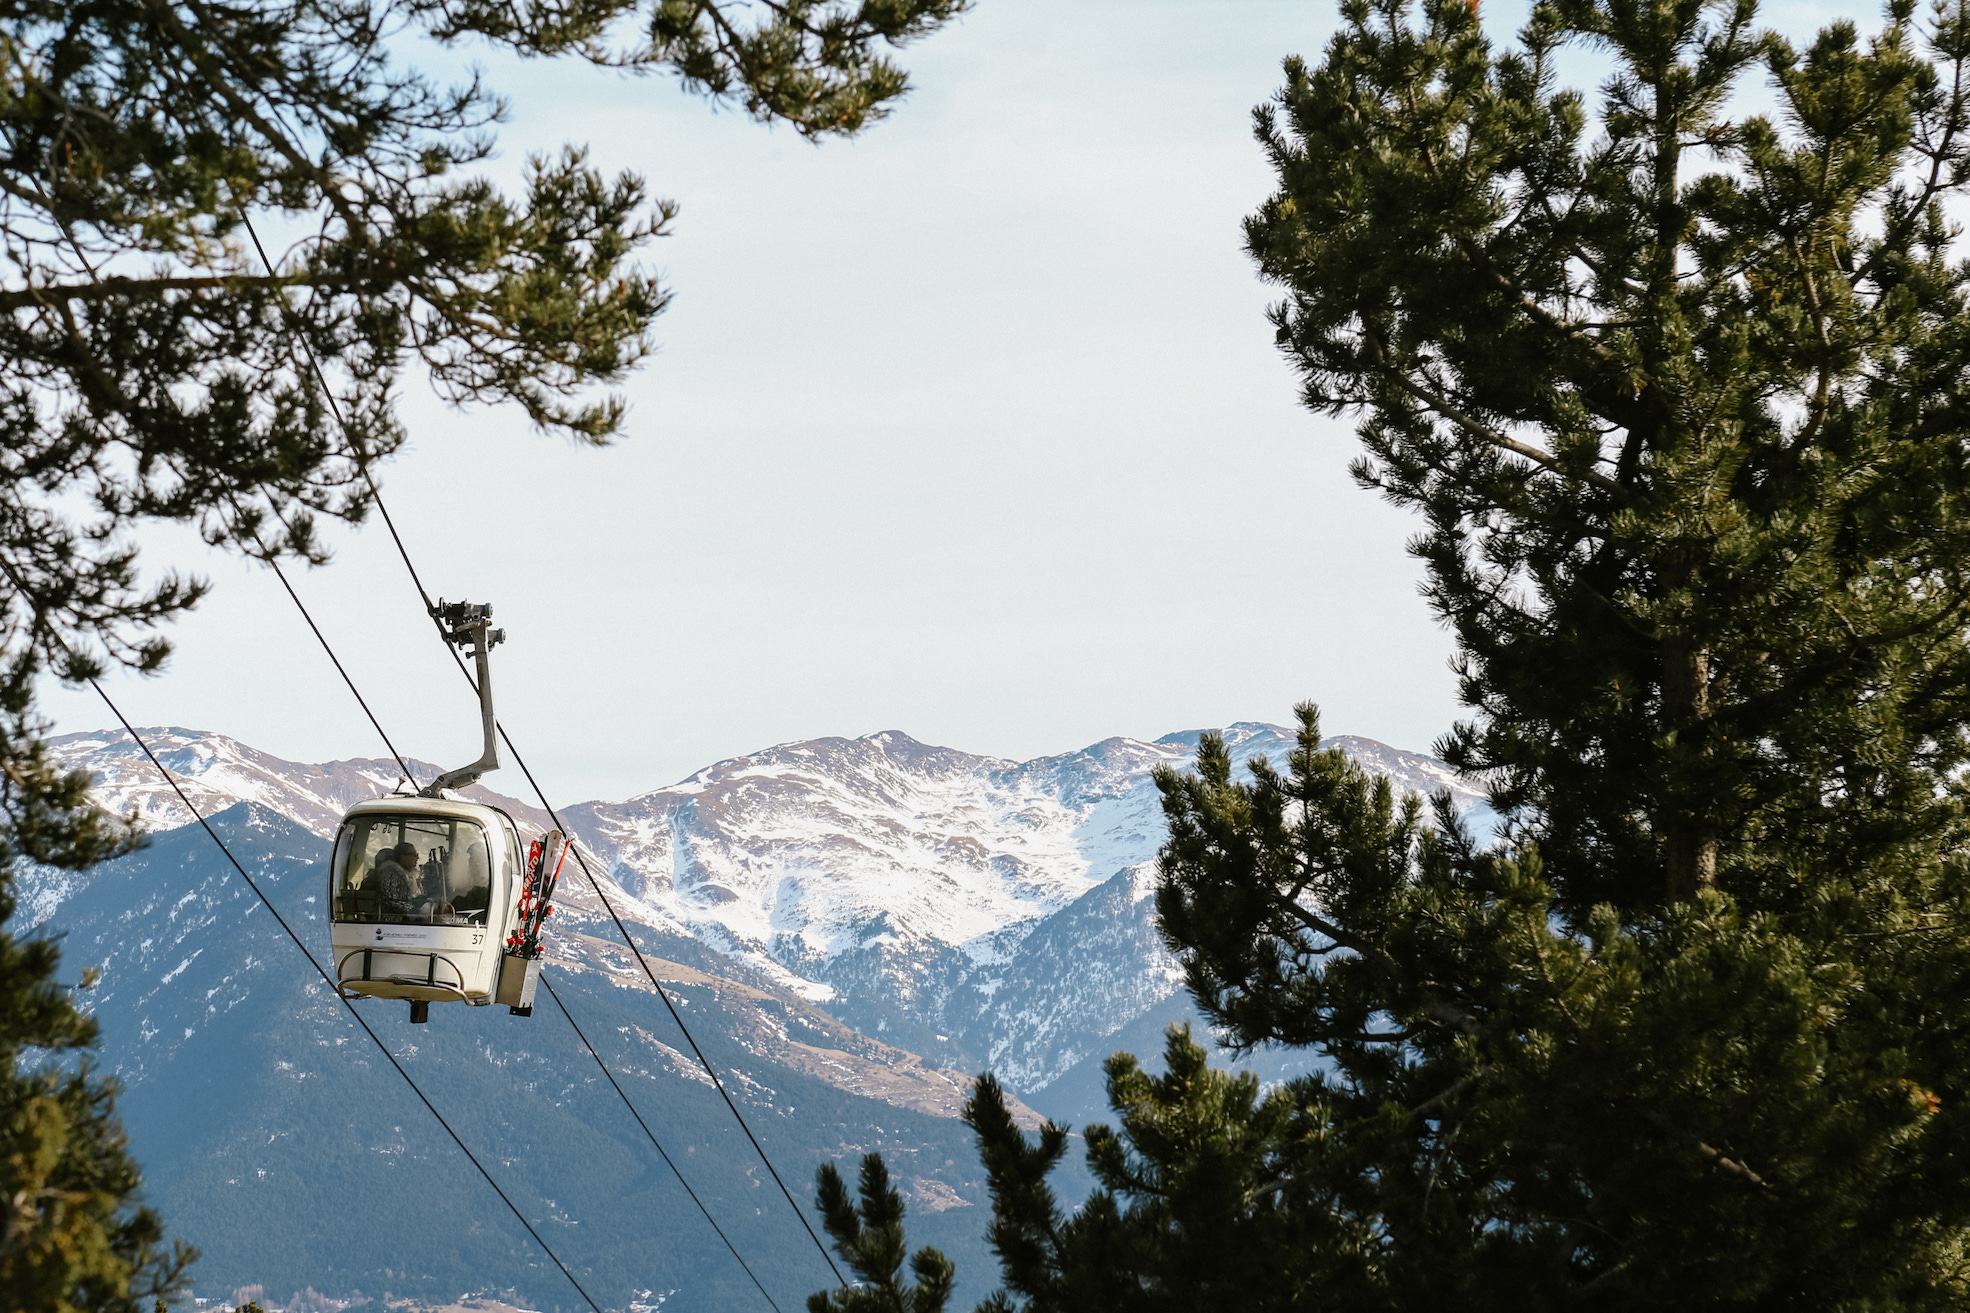 Station de ski : l'agacement de Font-Romeu Pyrénées 2000 après le rapport de la chambre régionale des comptes